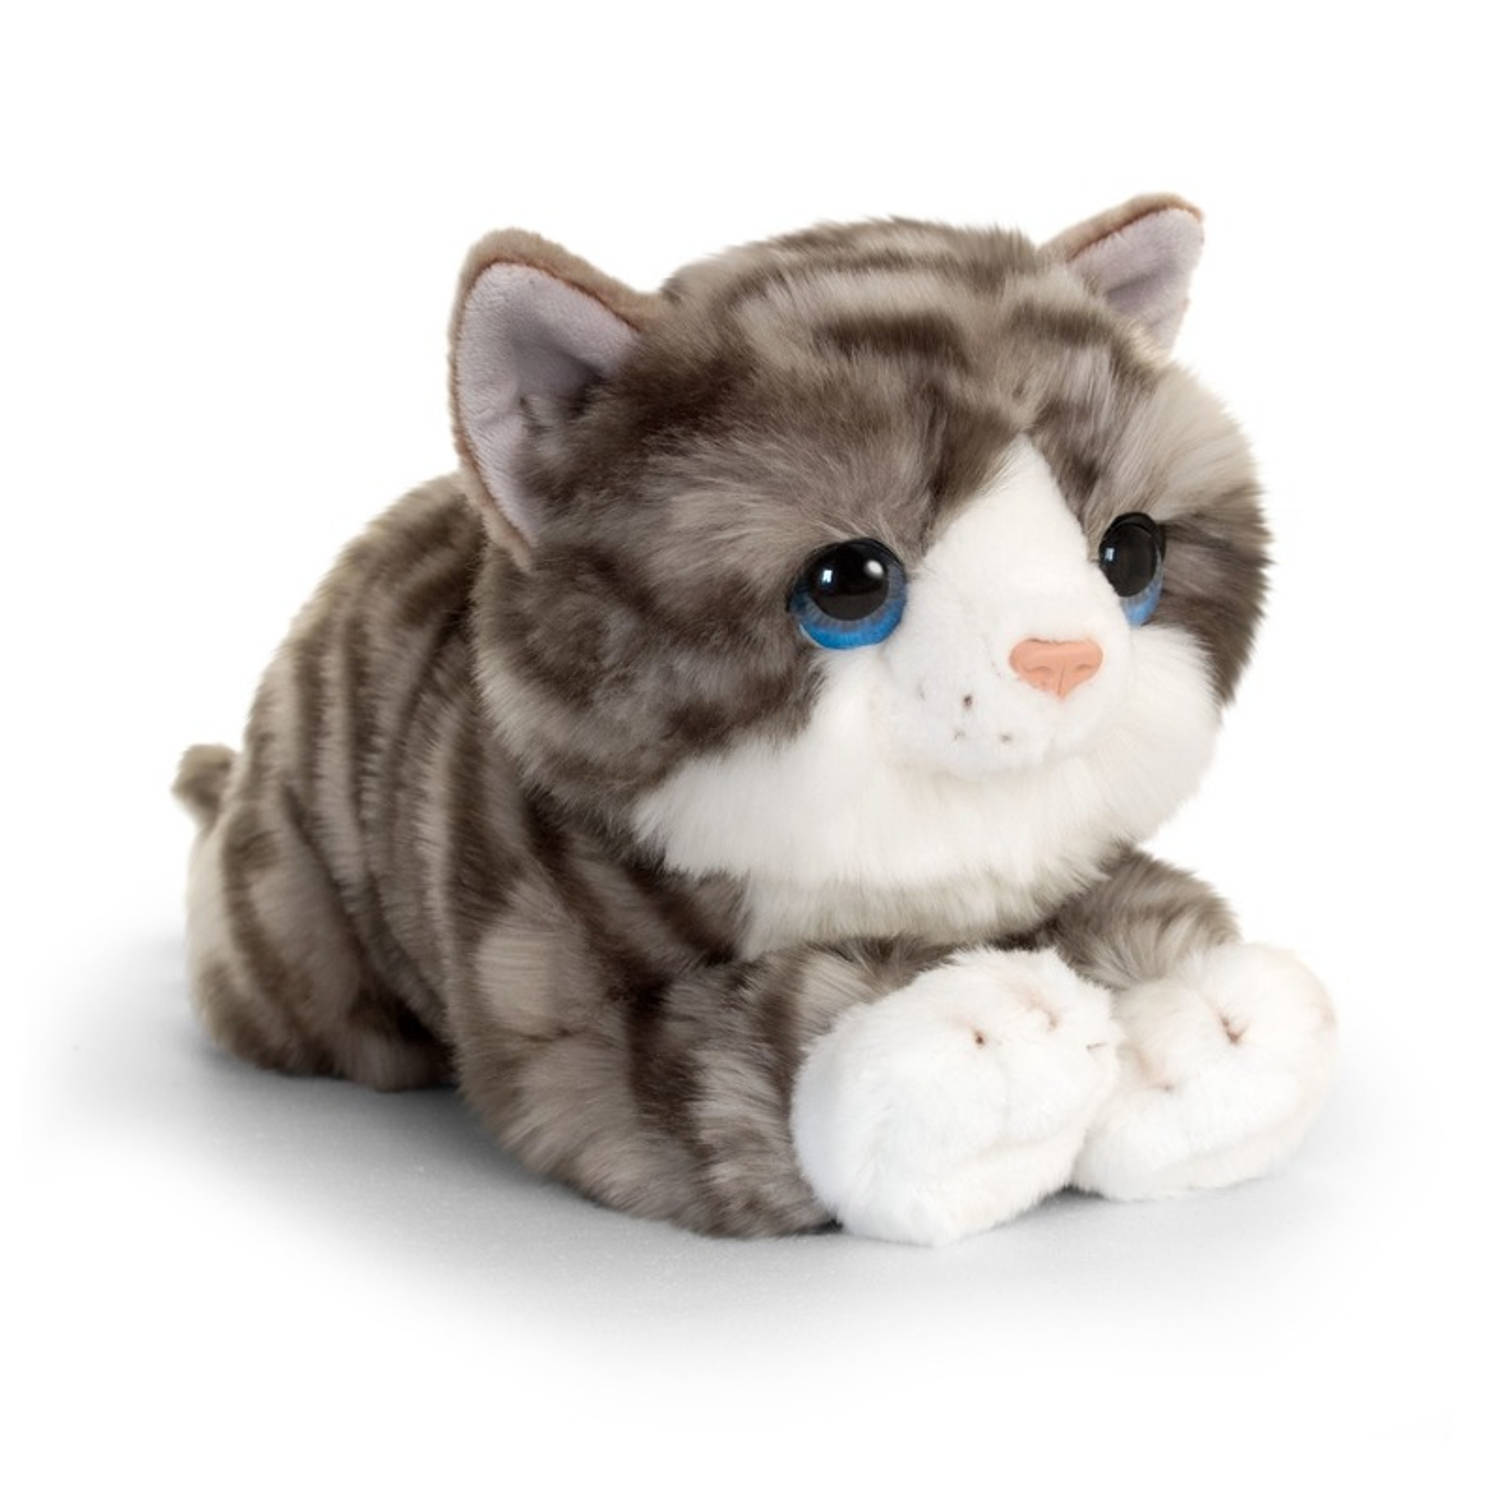 Beschuldiging Vechter Ik zie je morgen Cadeau setje pluche grijze kat/poes knuffel 32 cm met Happy Birthday  wenskaart - Knuffel huisdieren | Blokker